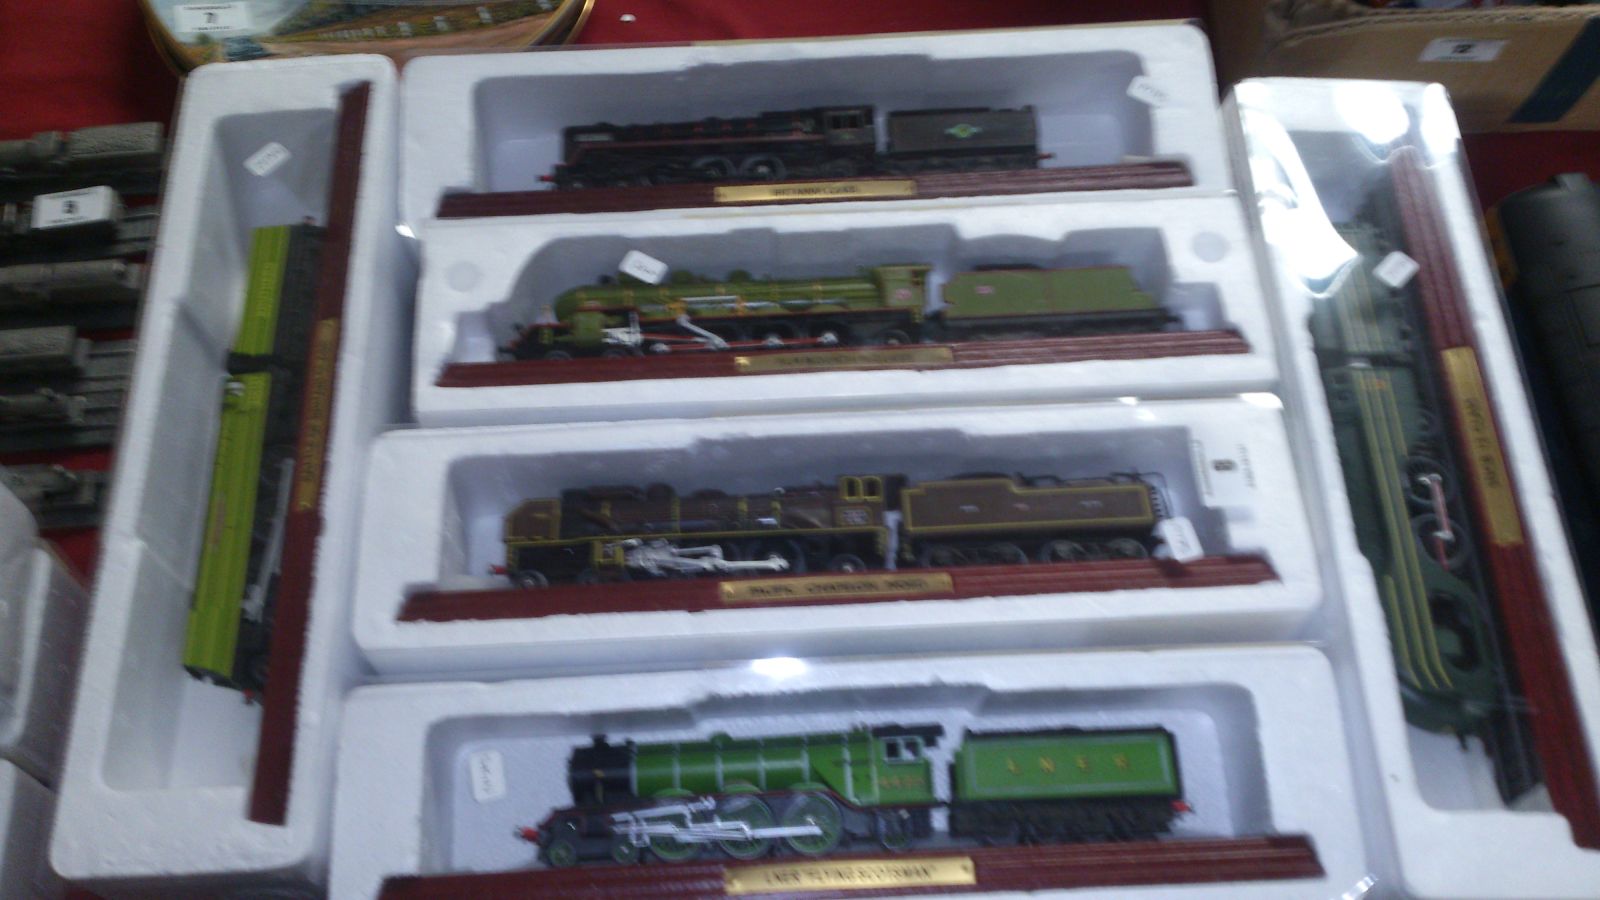 6 models of trains